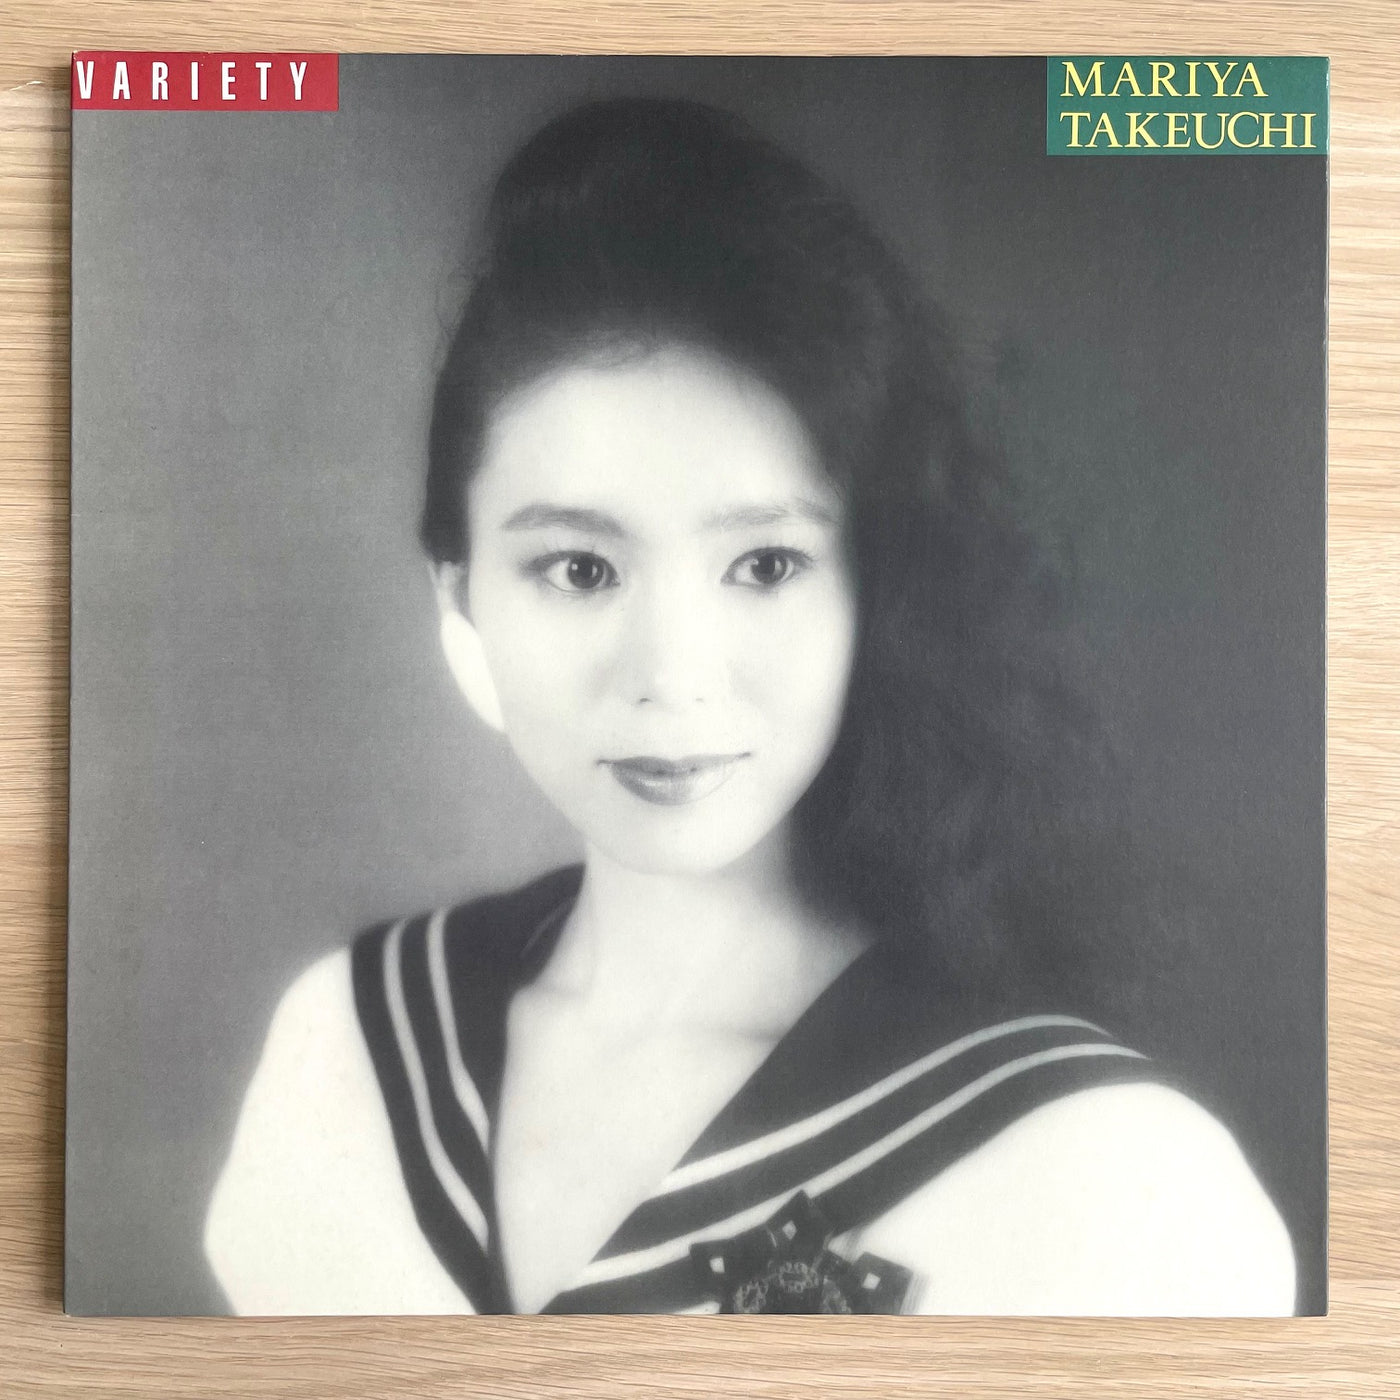 竹内まりや / VARIETY (LP)